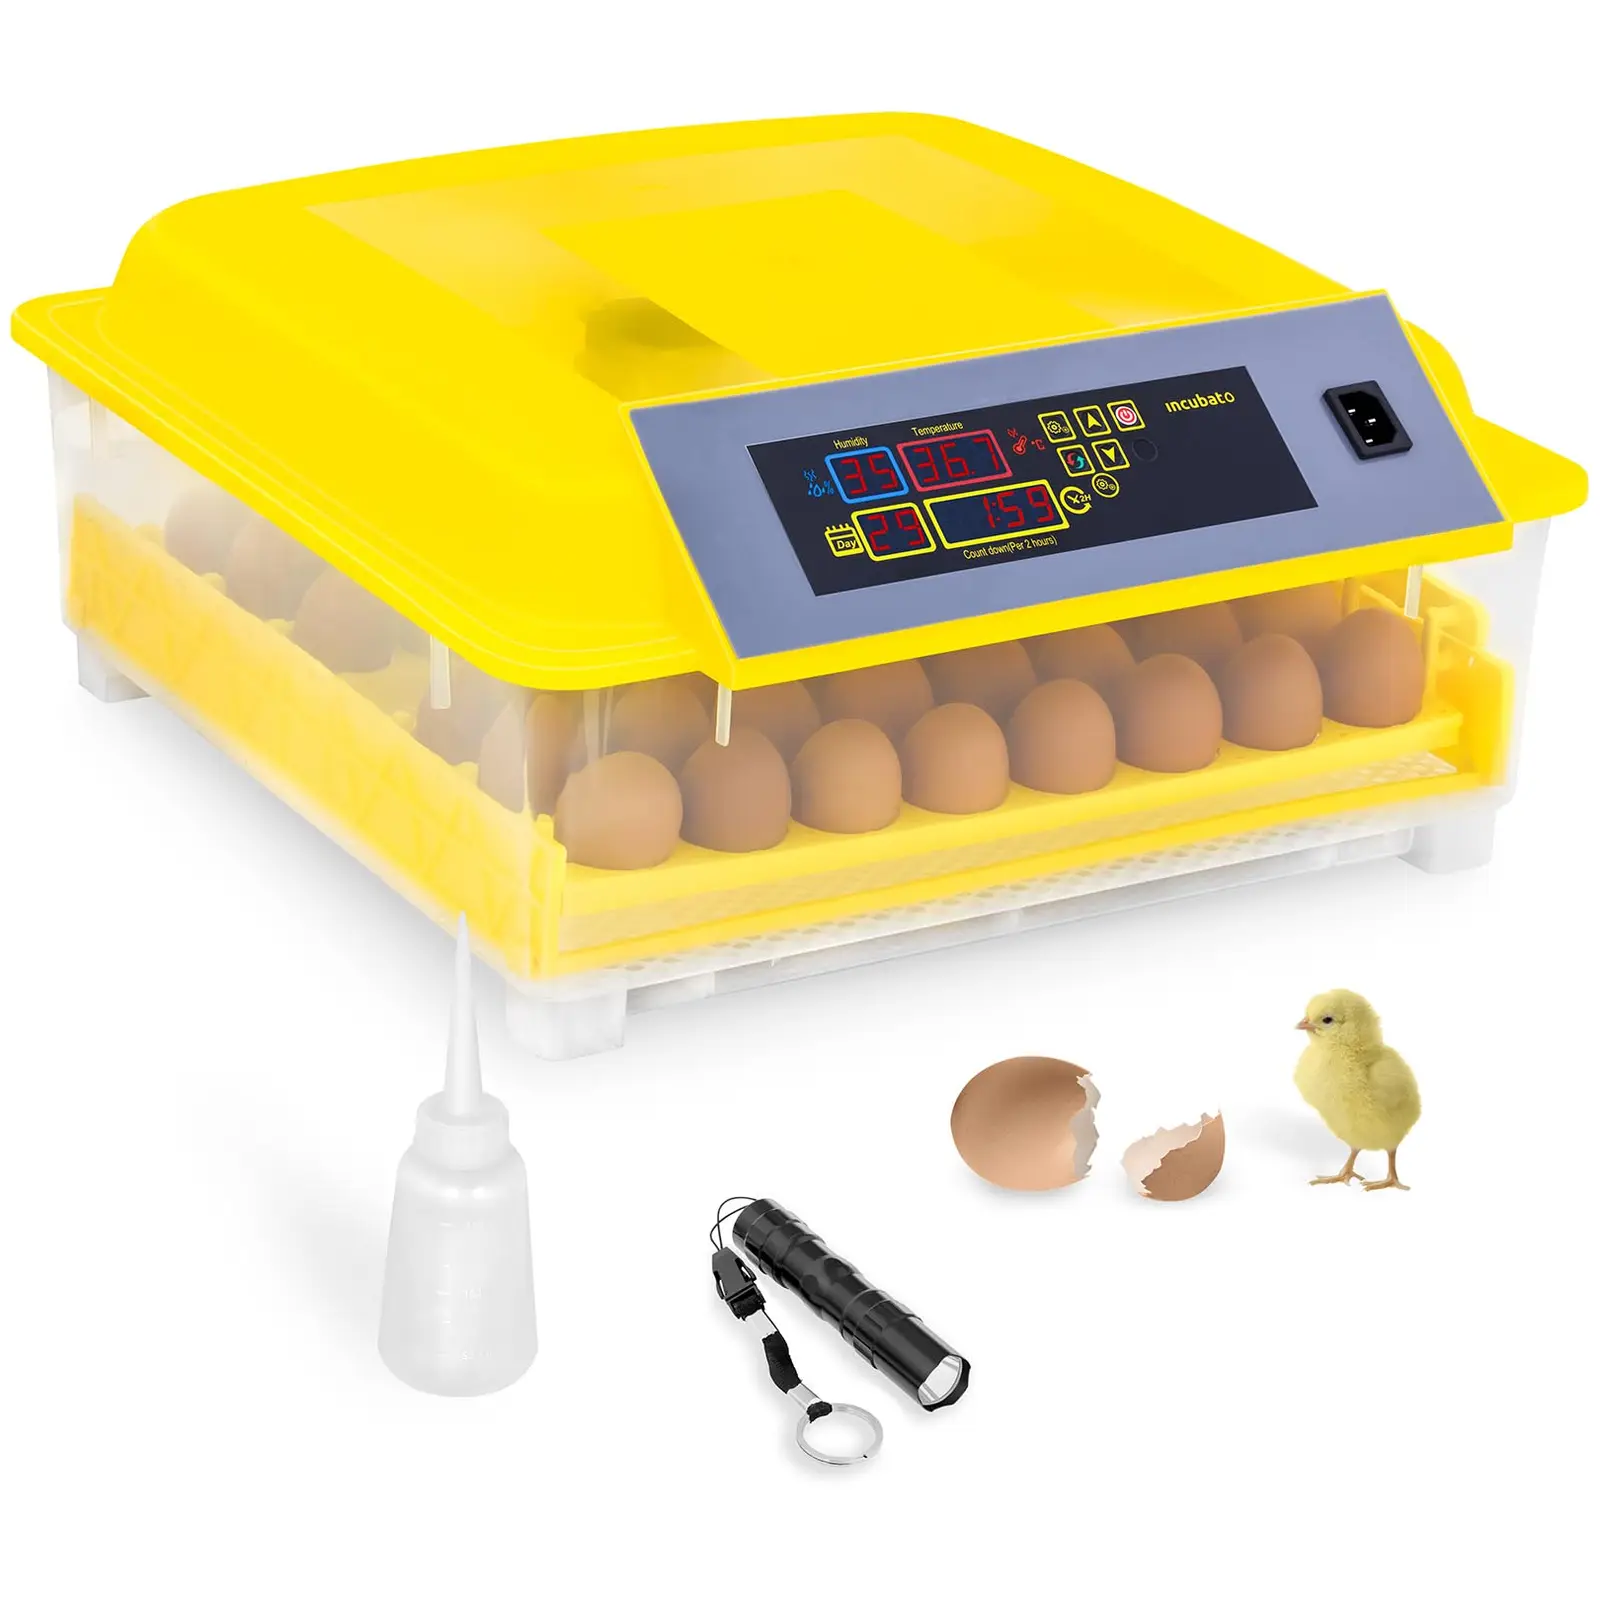 Incubatrice per uova - 48 uova - Lampada sperauova e distributore d’acqua inclusi - Completamente automatica